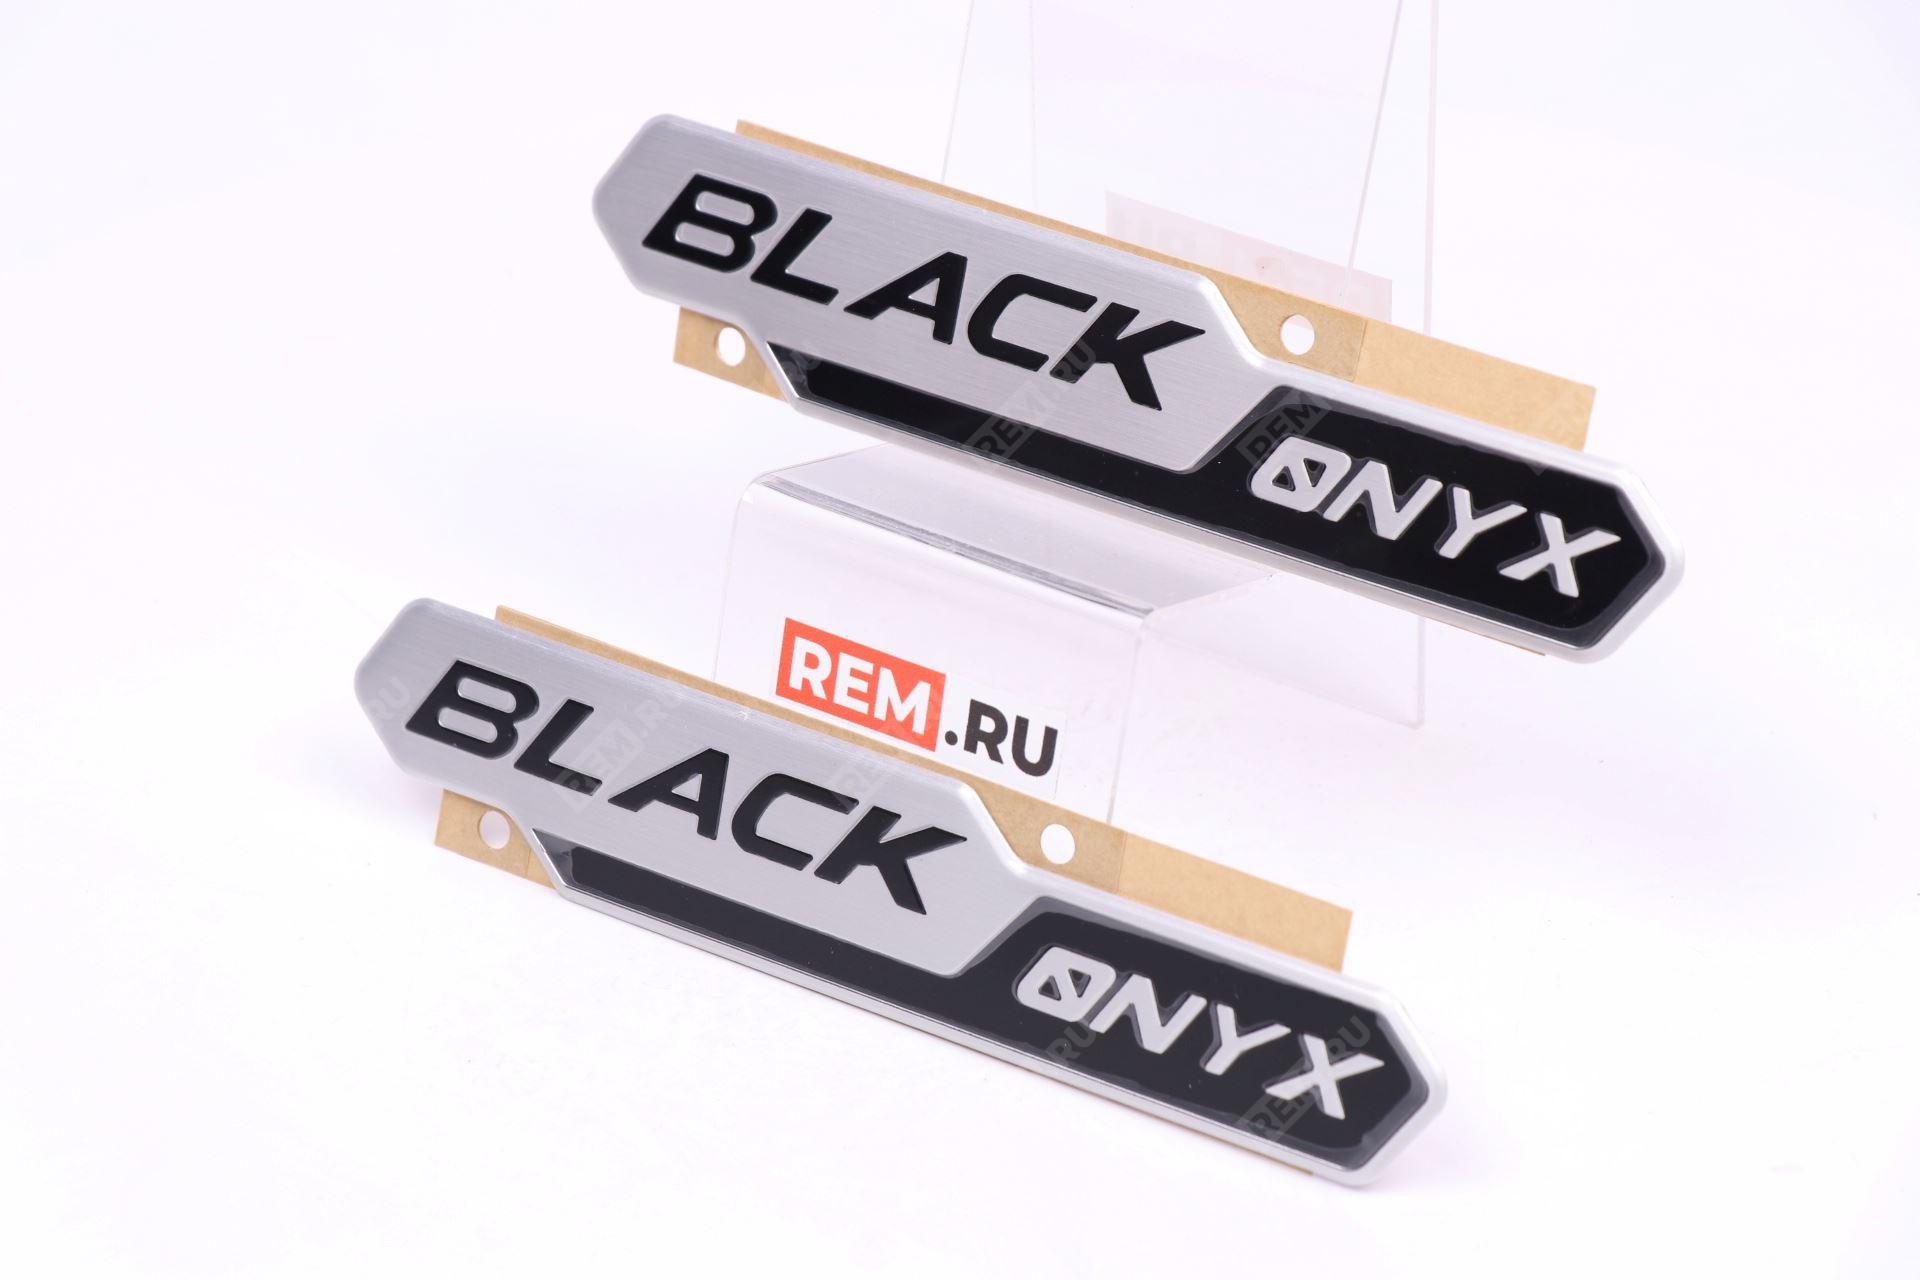  PW1890K002 эмблема надпись "black onyx"